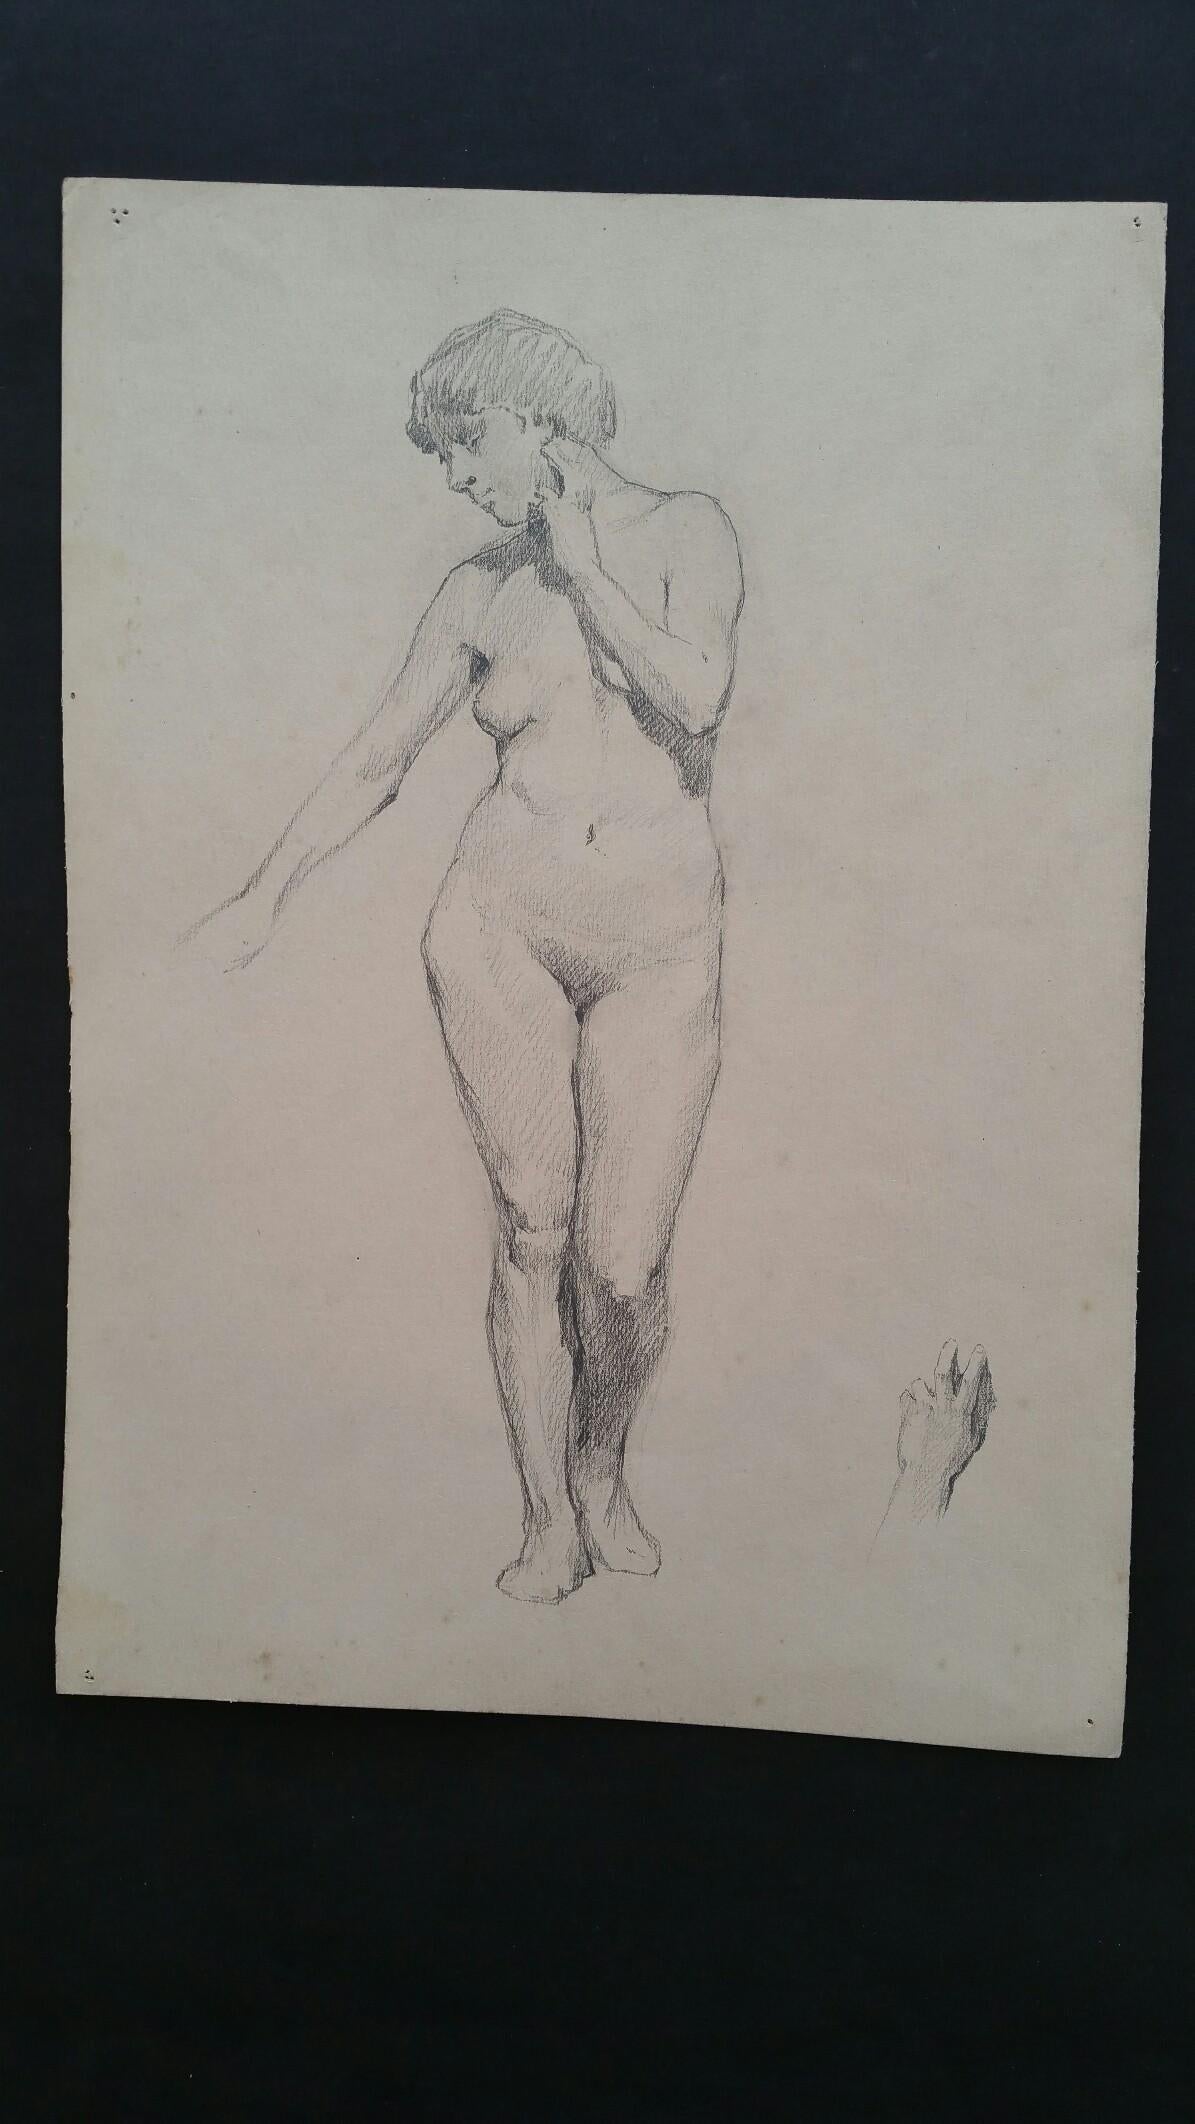 Esquisse à la mine de plomb d'une femme nue, debout.
par Henry George Moon (britannique 1857-1905).
sur papier d'artiste blanc cassé, non encadré.
Dimensions : feuille 14.75 x 10.5 pouces.

Provenance : de la succession de